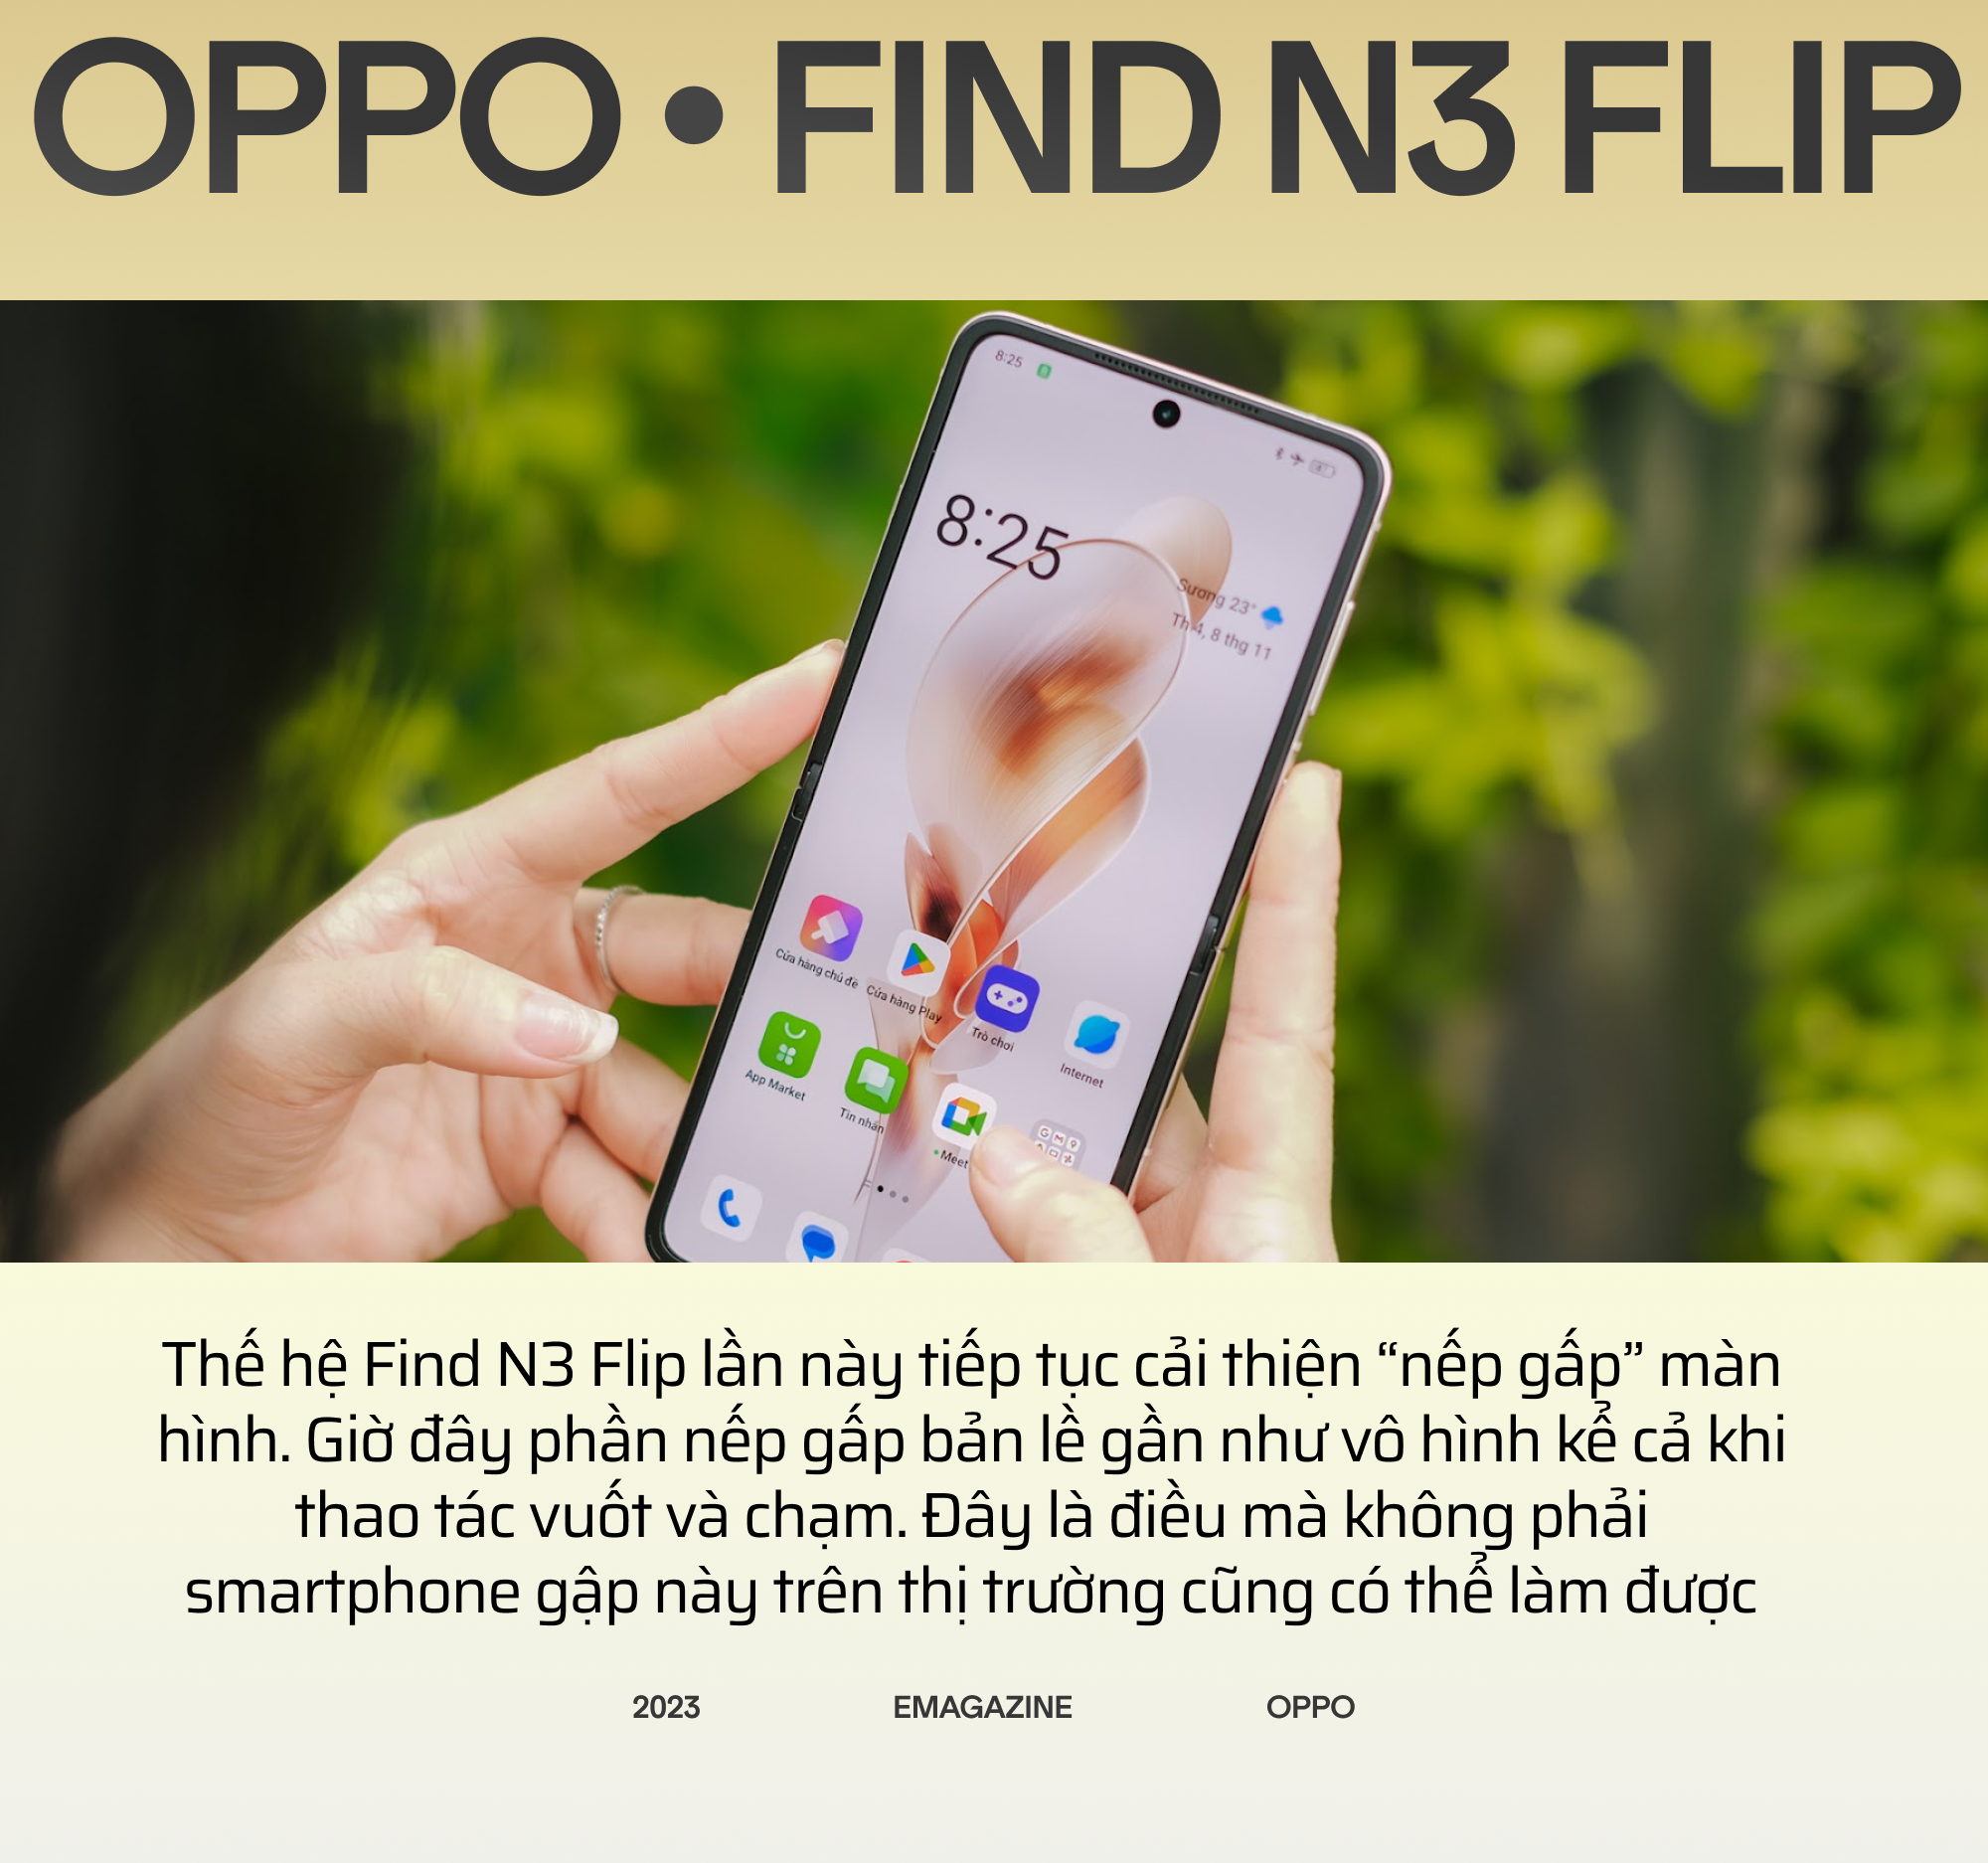 OPPO Find N3 Flip và hành trình đi tìm chiếc smartphone gập toàn diện - Ảnh 10.